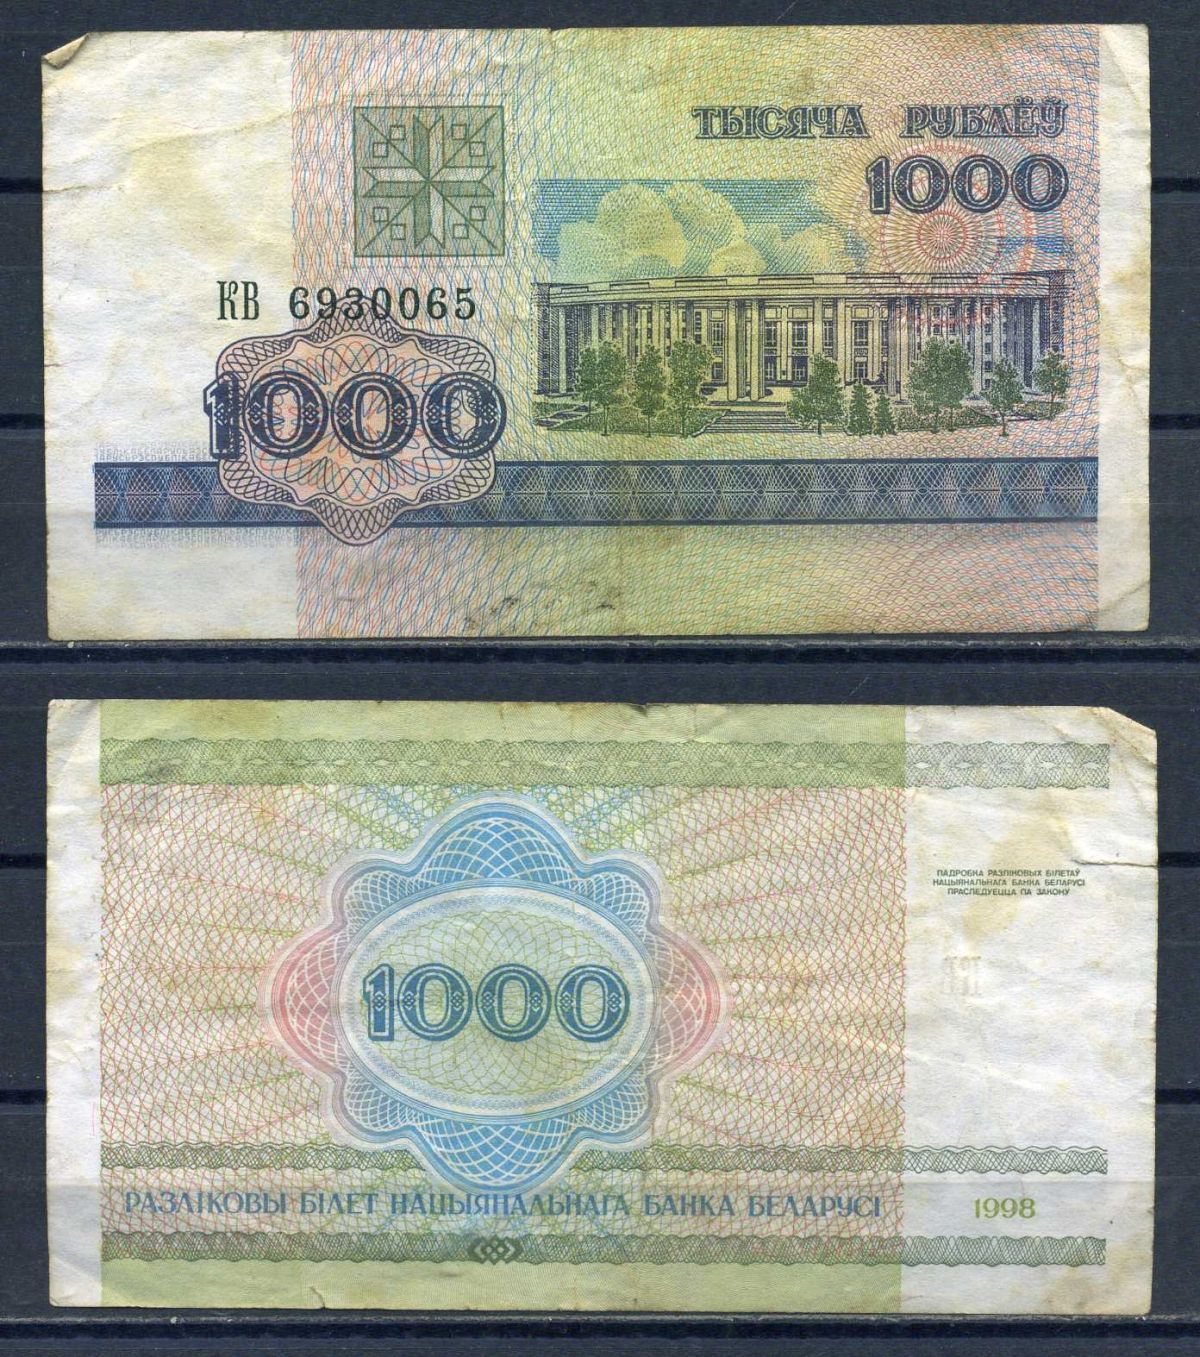 70000 российских рублей в белорусских рублях